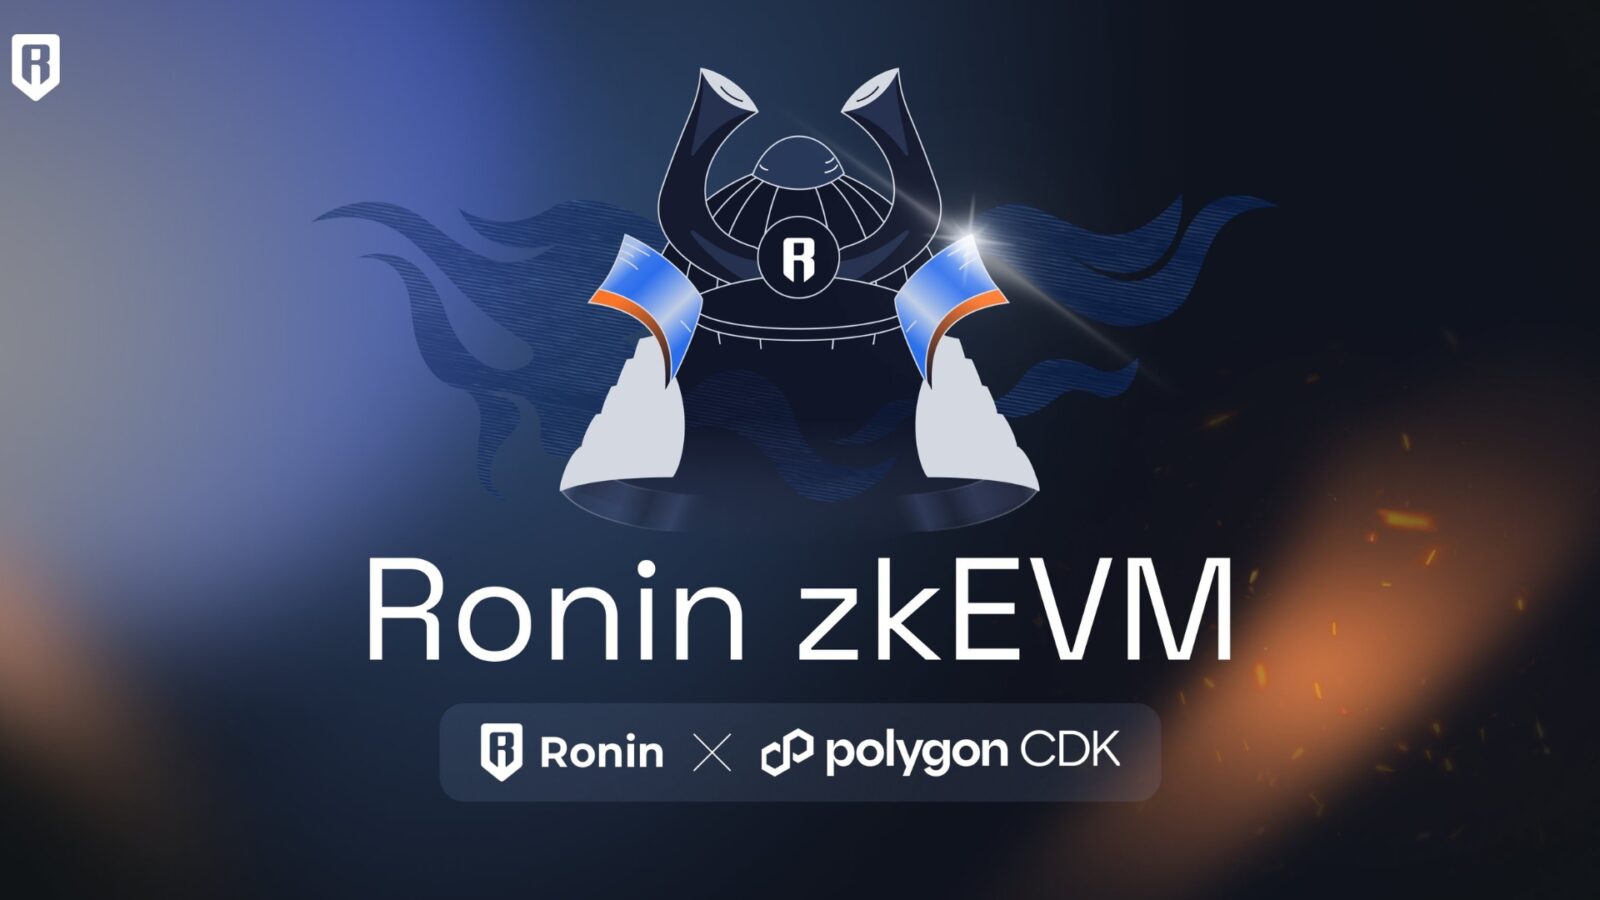 Sky Mavis Announces Support for zkEVM L2 Chains on Ronin